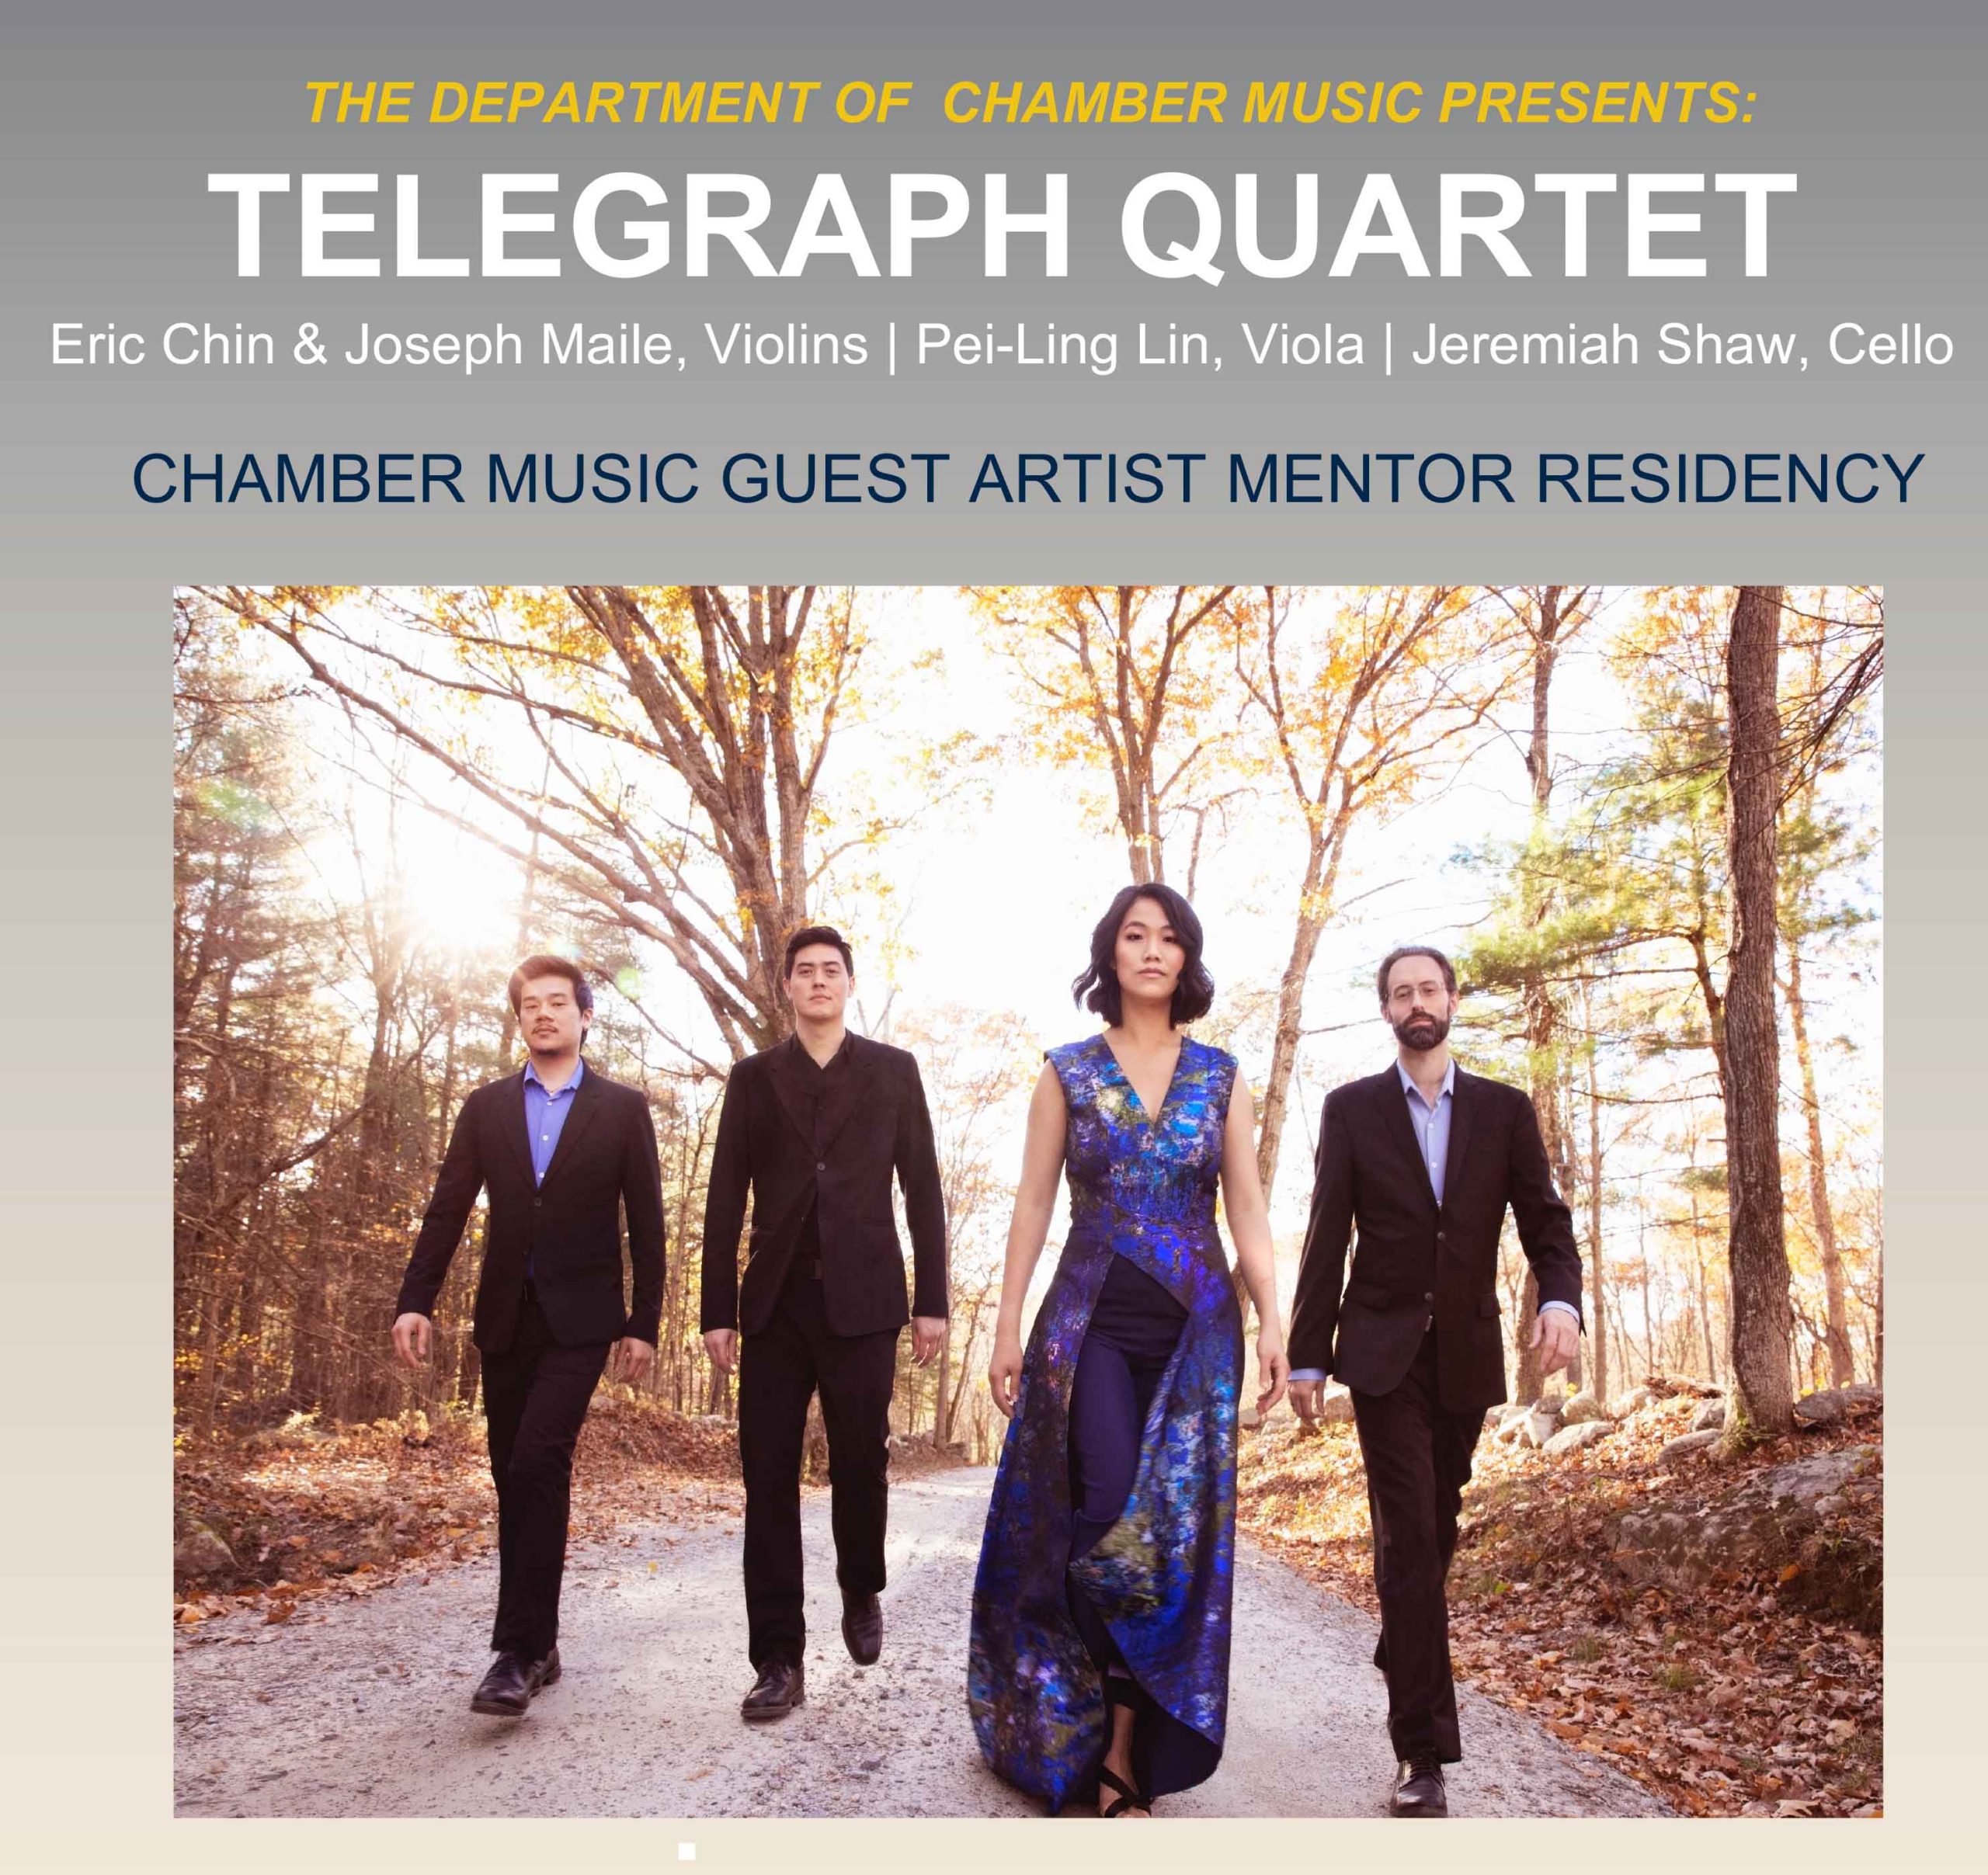 Expired) Telegraph Quartet